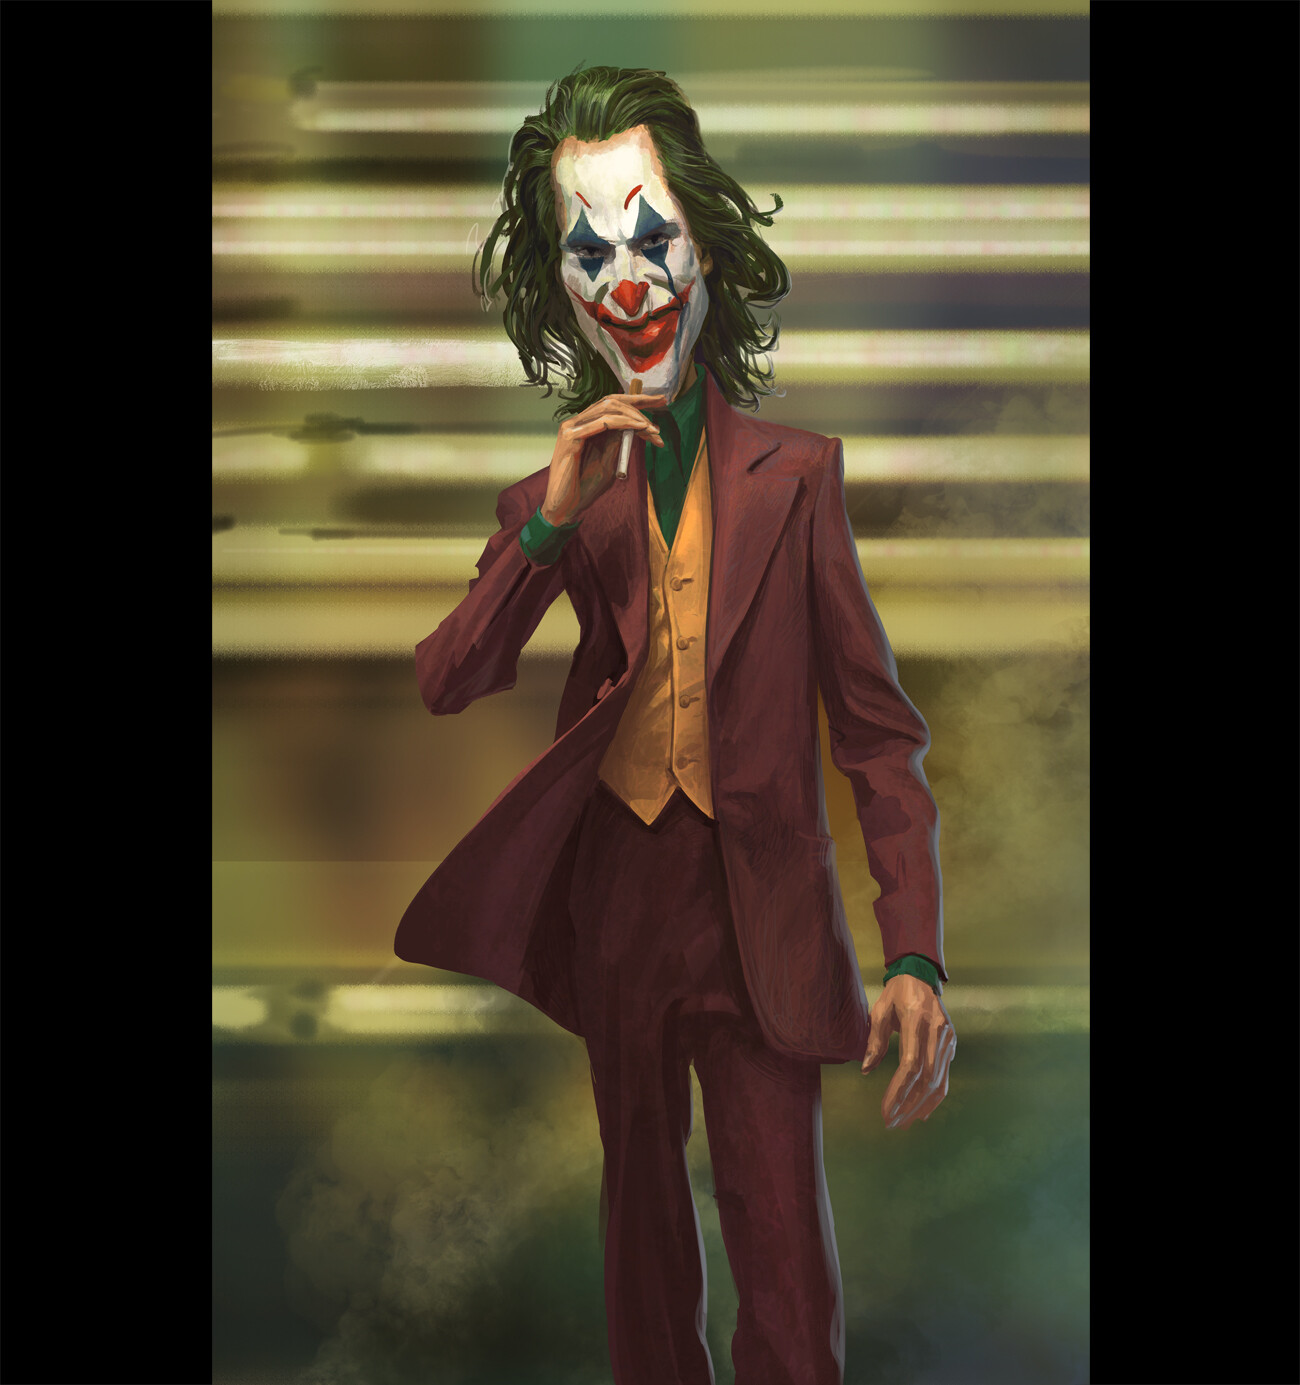 Epic Joker Wallpapers